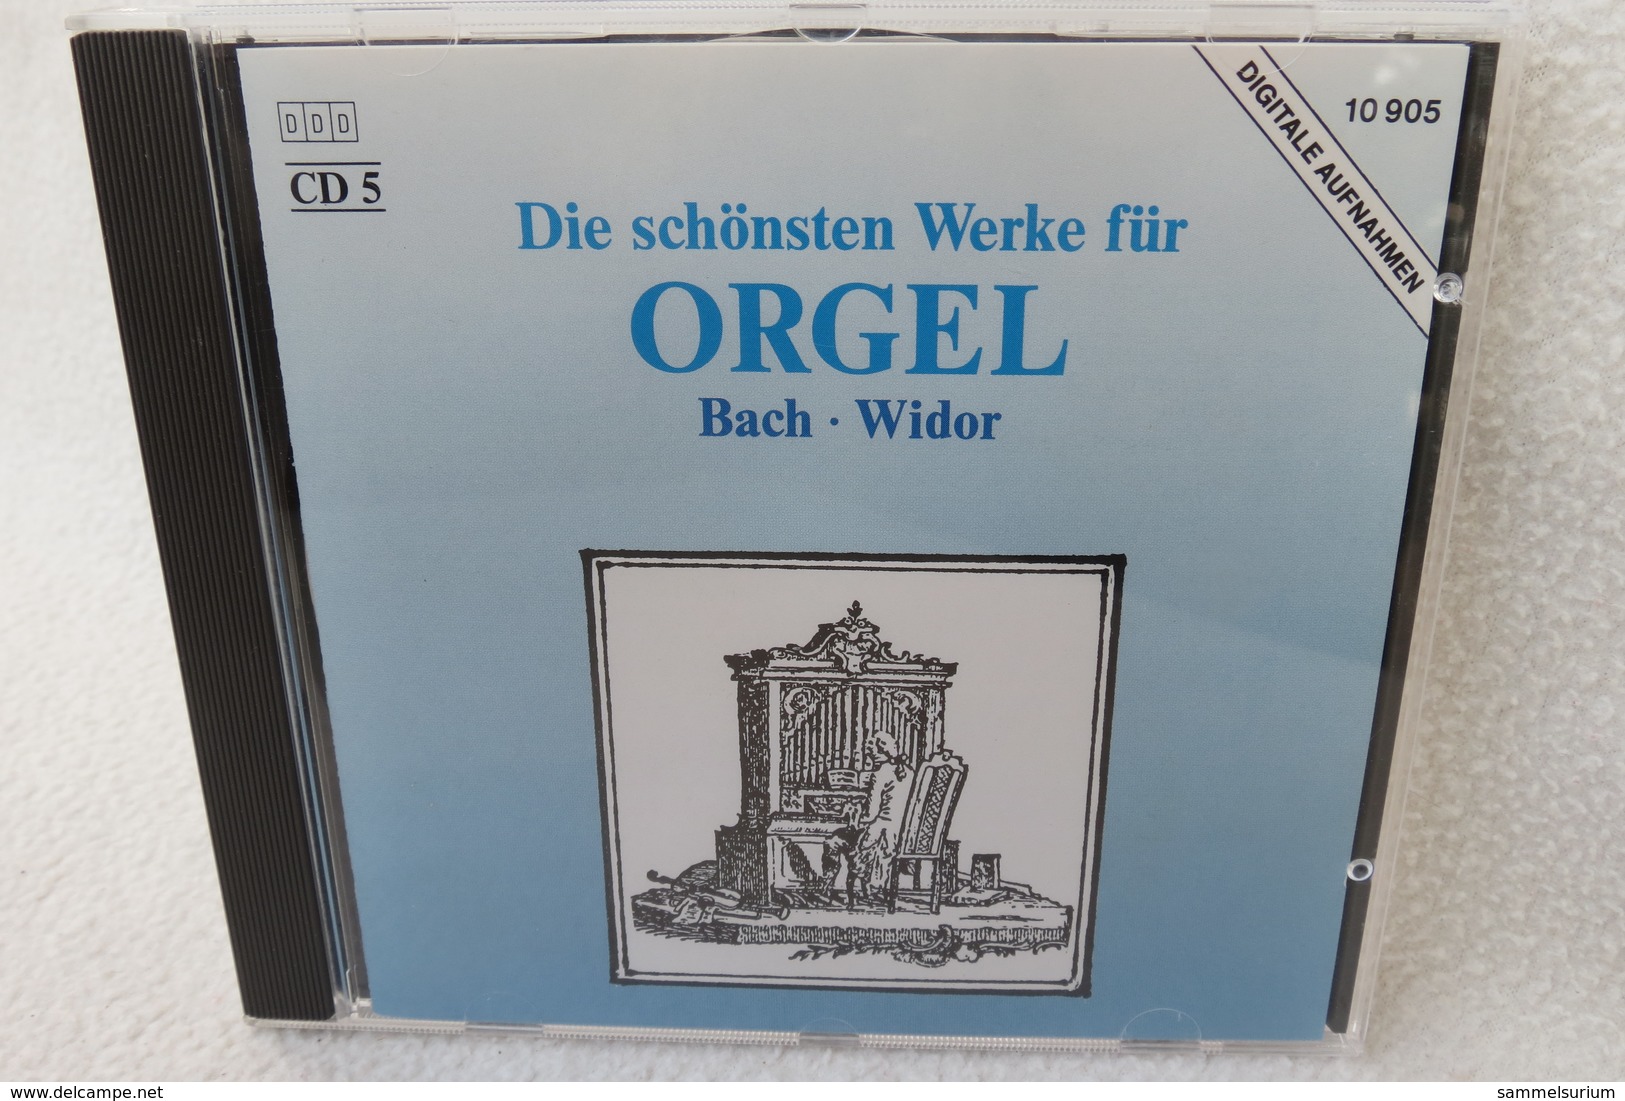 5 CDs "Klassische Meisterwerke" die schönsten klassischen Werke für Klavier, Violine, Trompete, Celle, Orgel